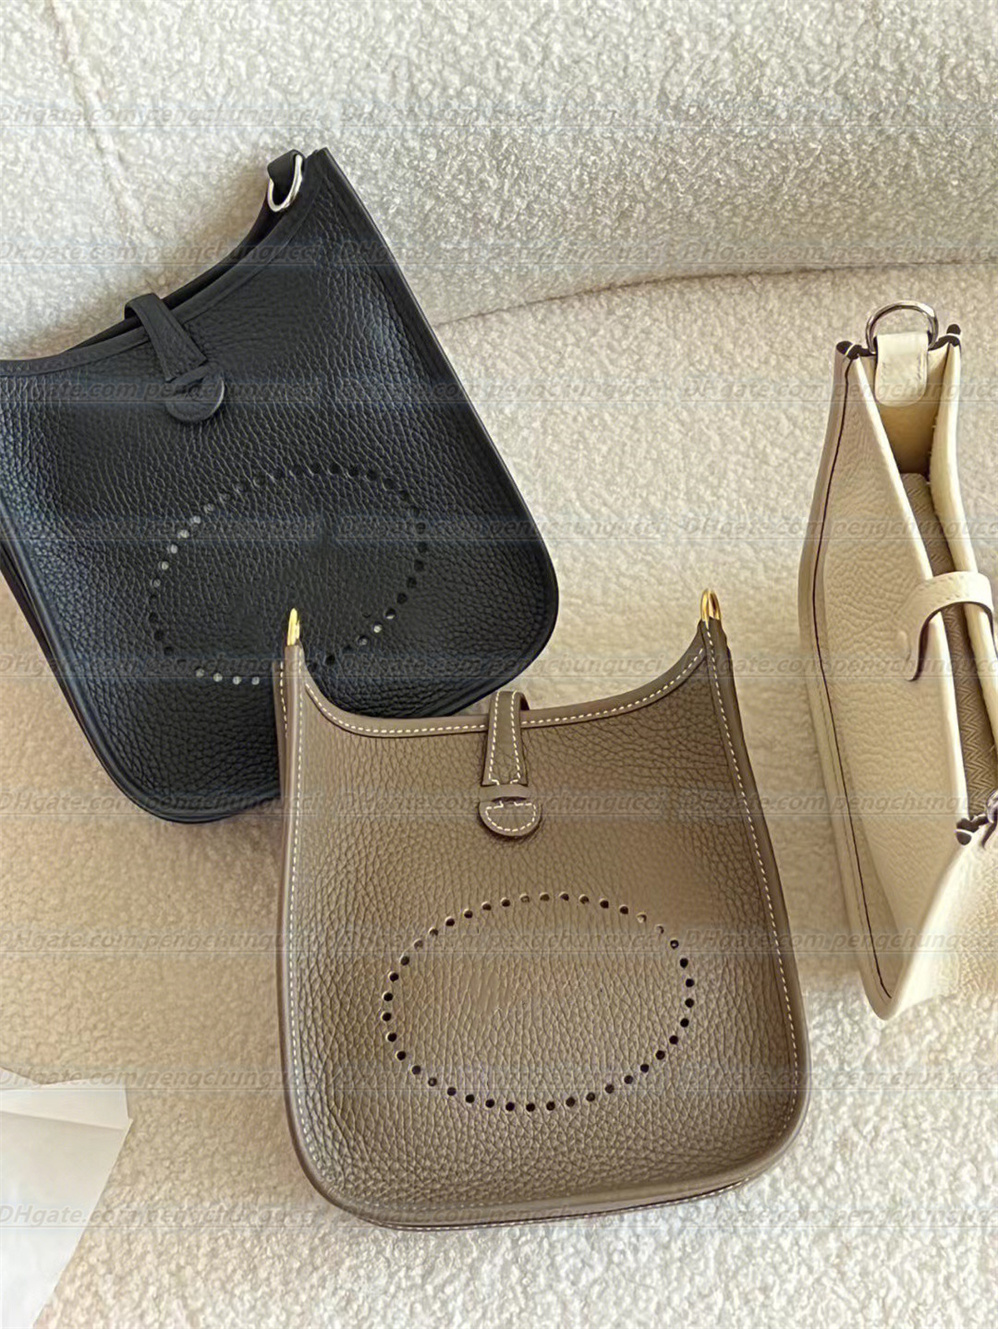 高品質のレザーショルダーバッグハンドバッグ革ハンドバッグ高級デザイン財布レディースハンドバッグトートショルダー財布